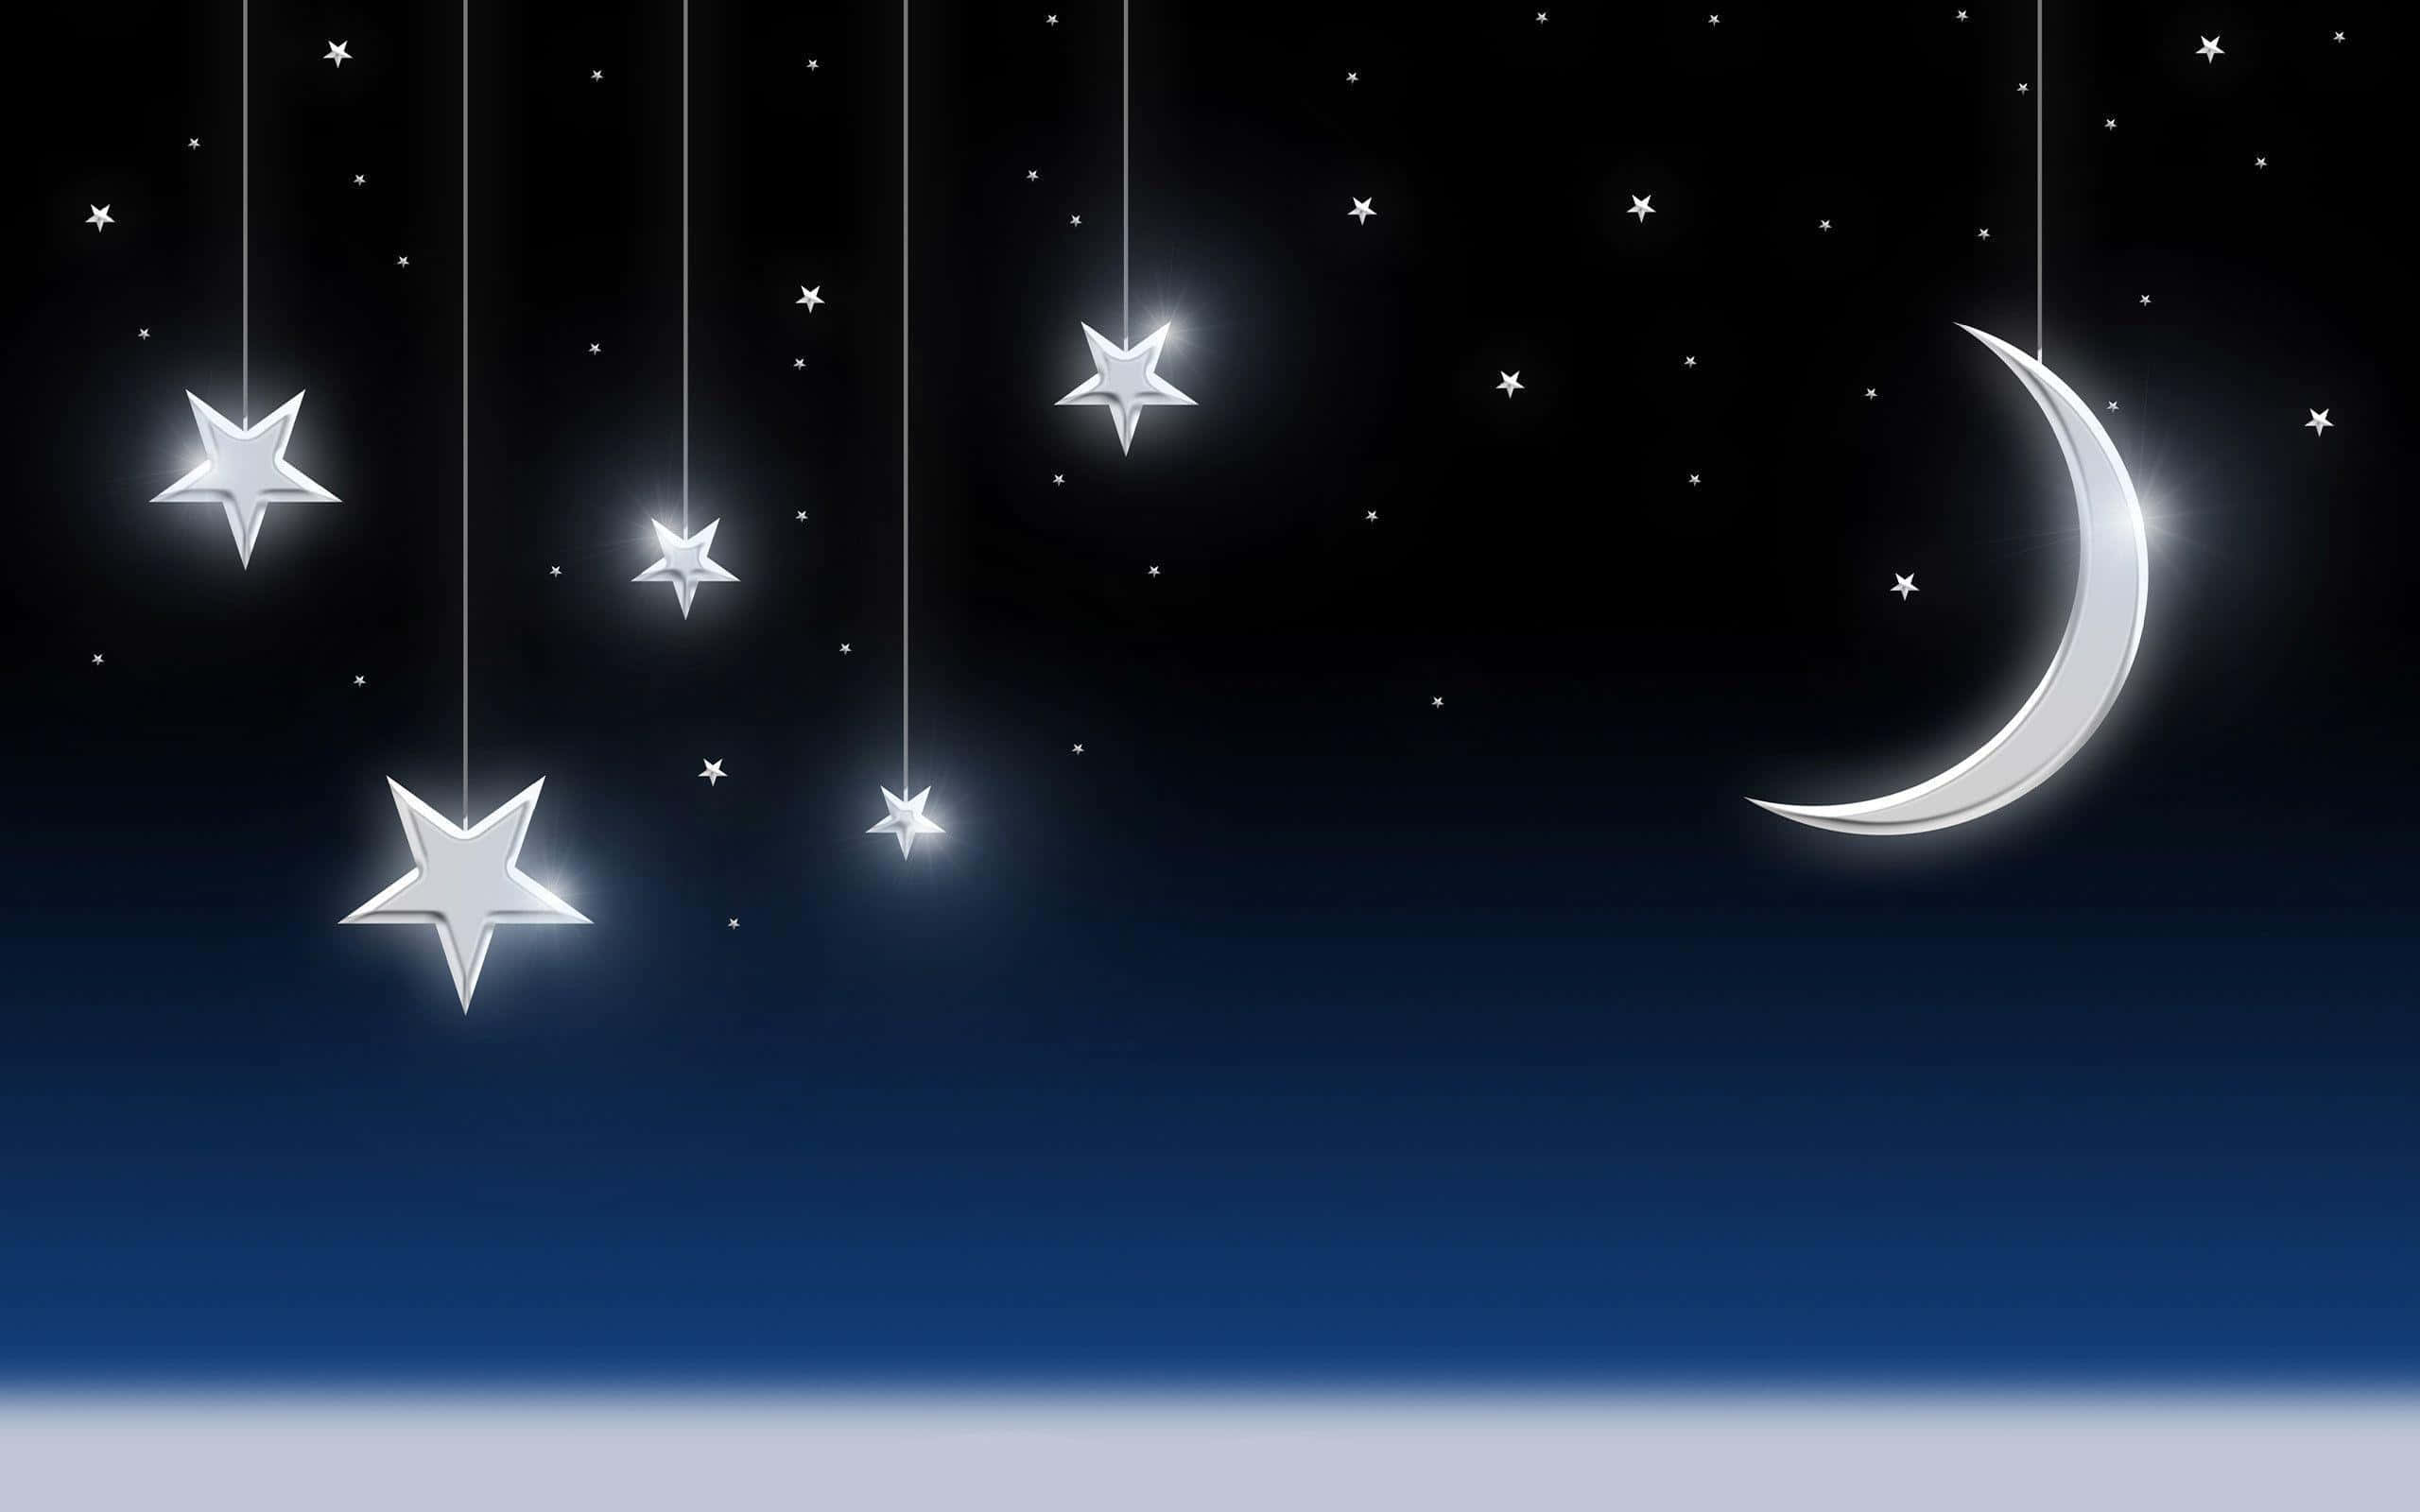 Moon and Stars Illuminating the Night Sky